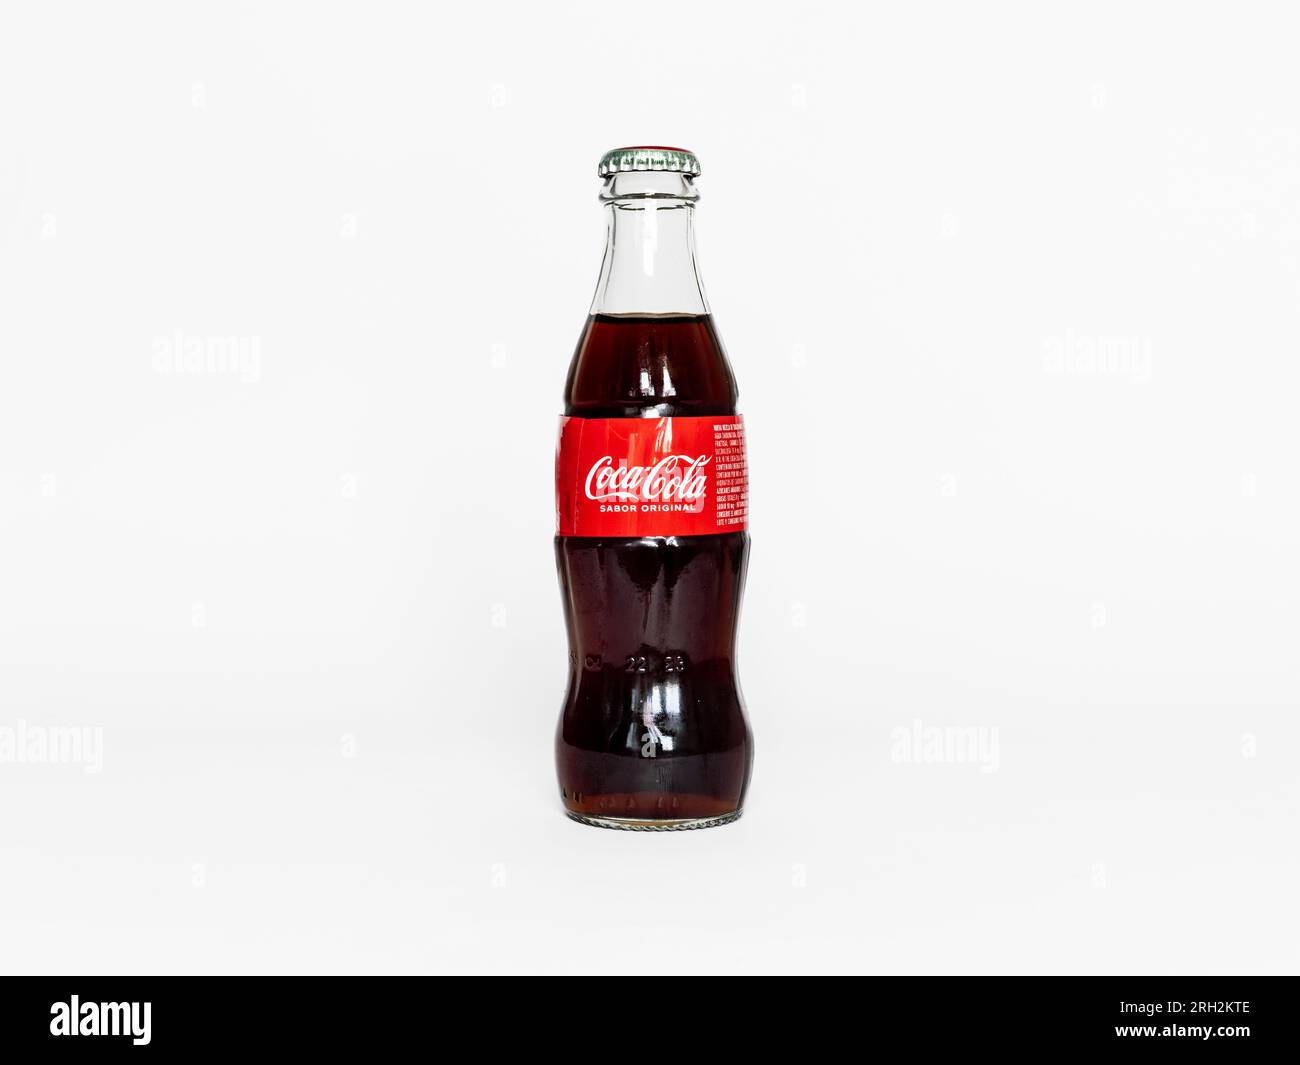 Mexikanische Colaflasche mit dem originellen Sabor-Geschmack. Das Coca-Cola-Getränk befindet sich in einer kleinen Glasflasche mit rotem Etikett und wird in Südamerika verkauft. Stockfoto